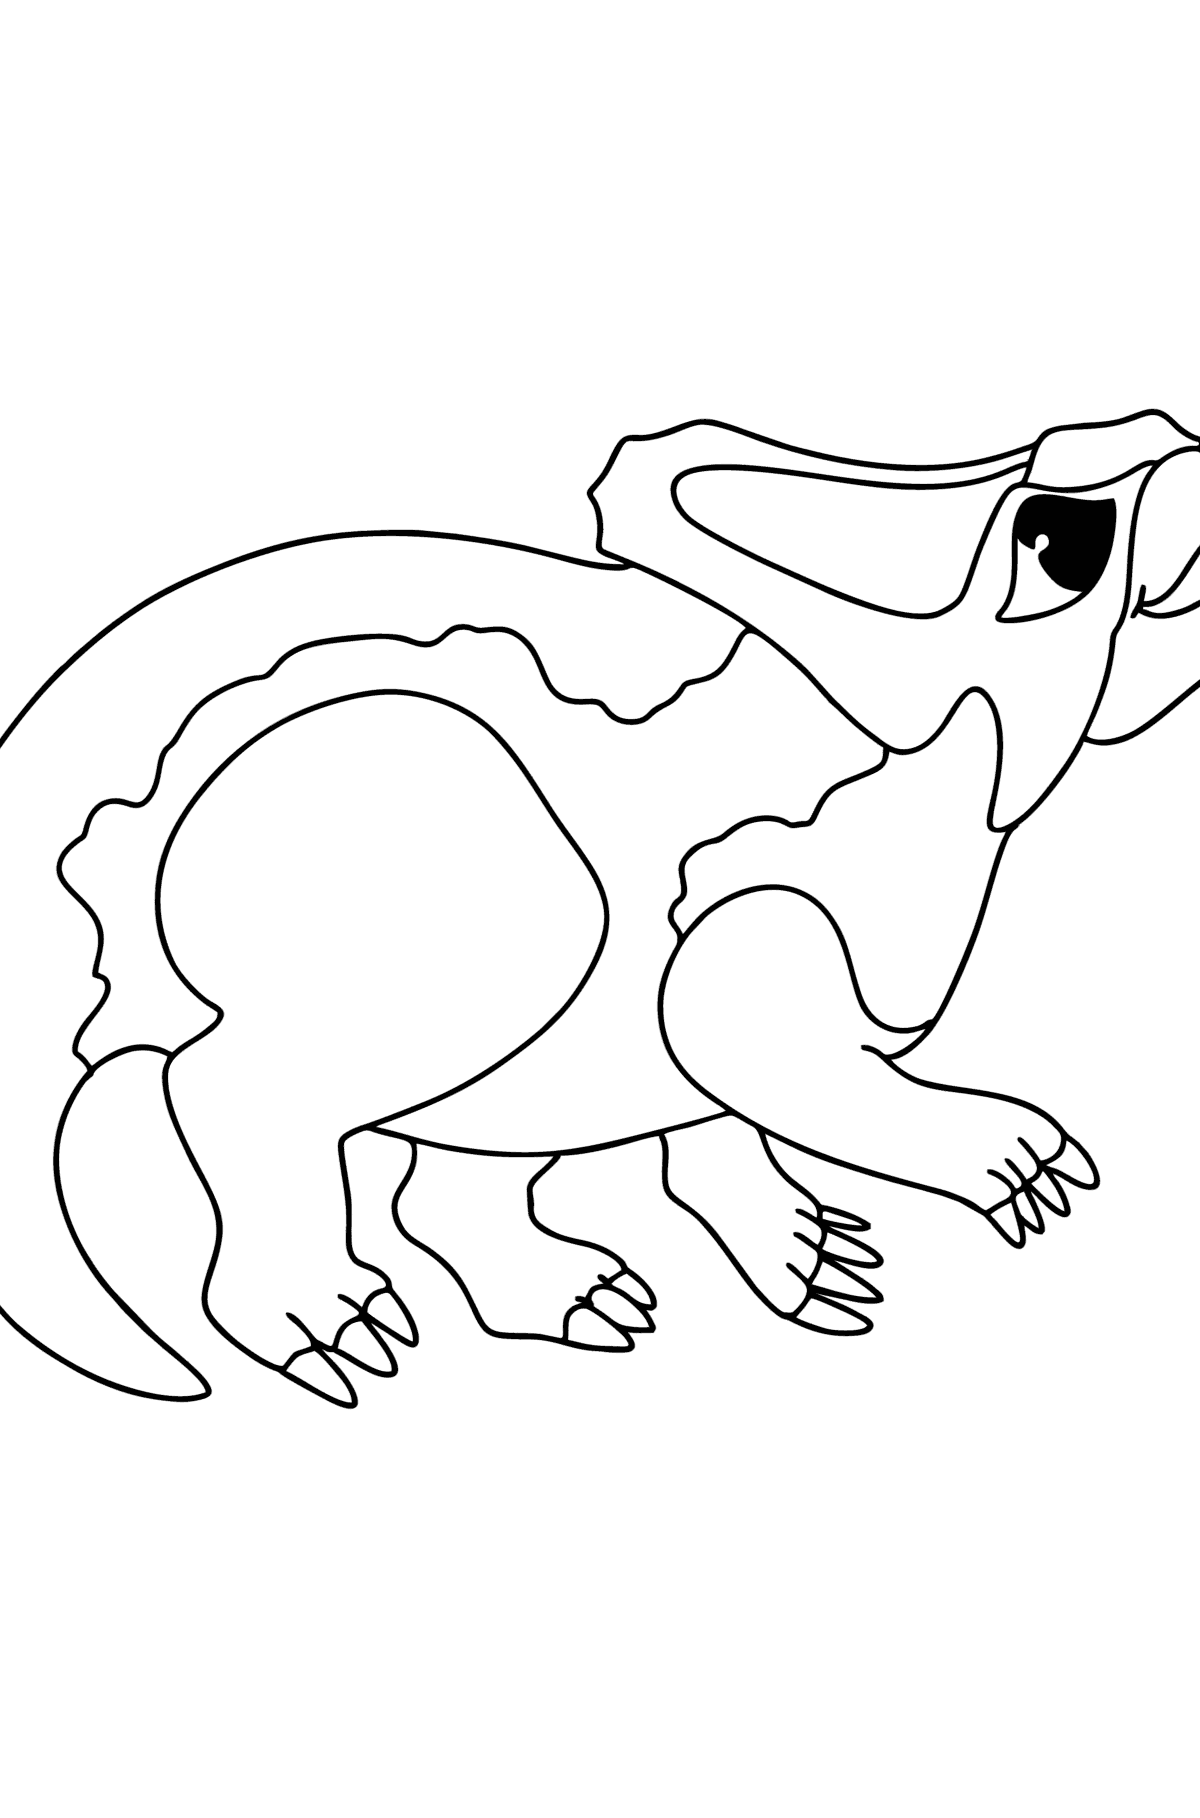 Boyama sayfası protoceratoplar - Boyamalar çocuklar için